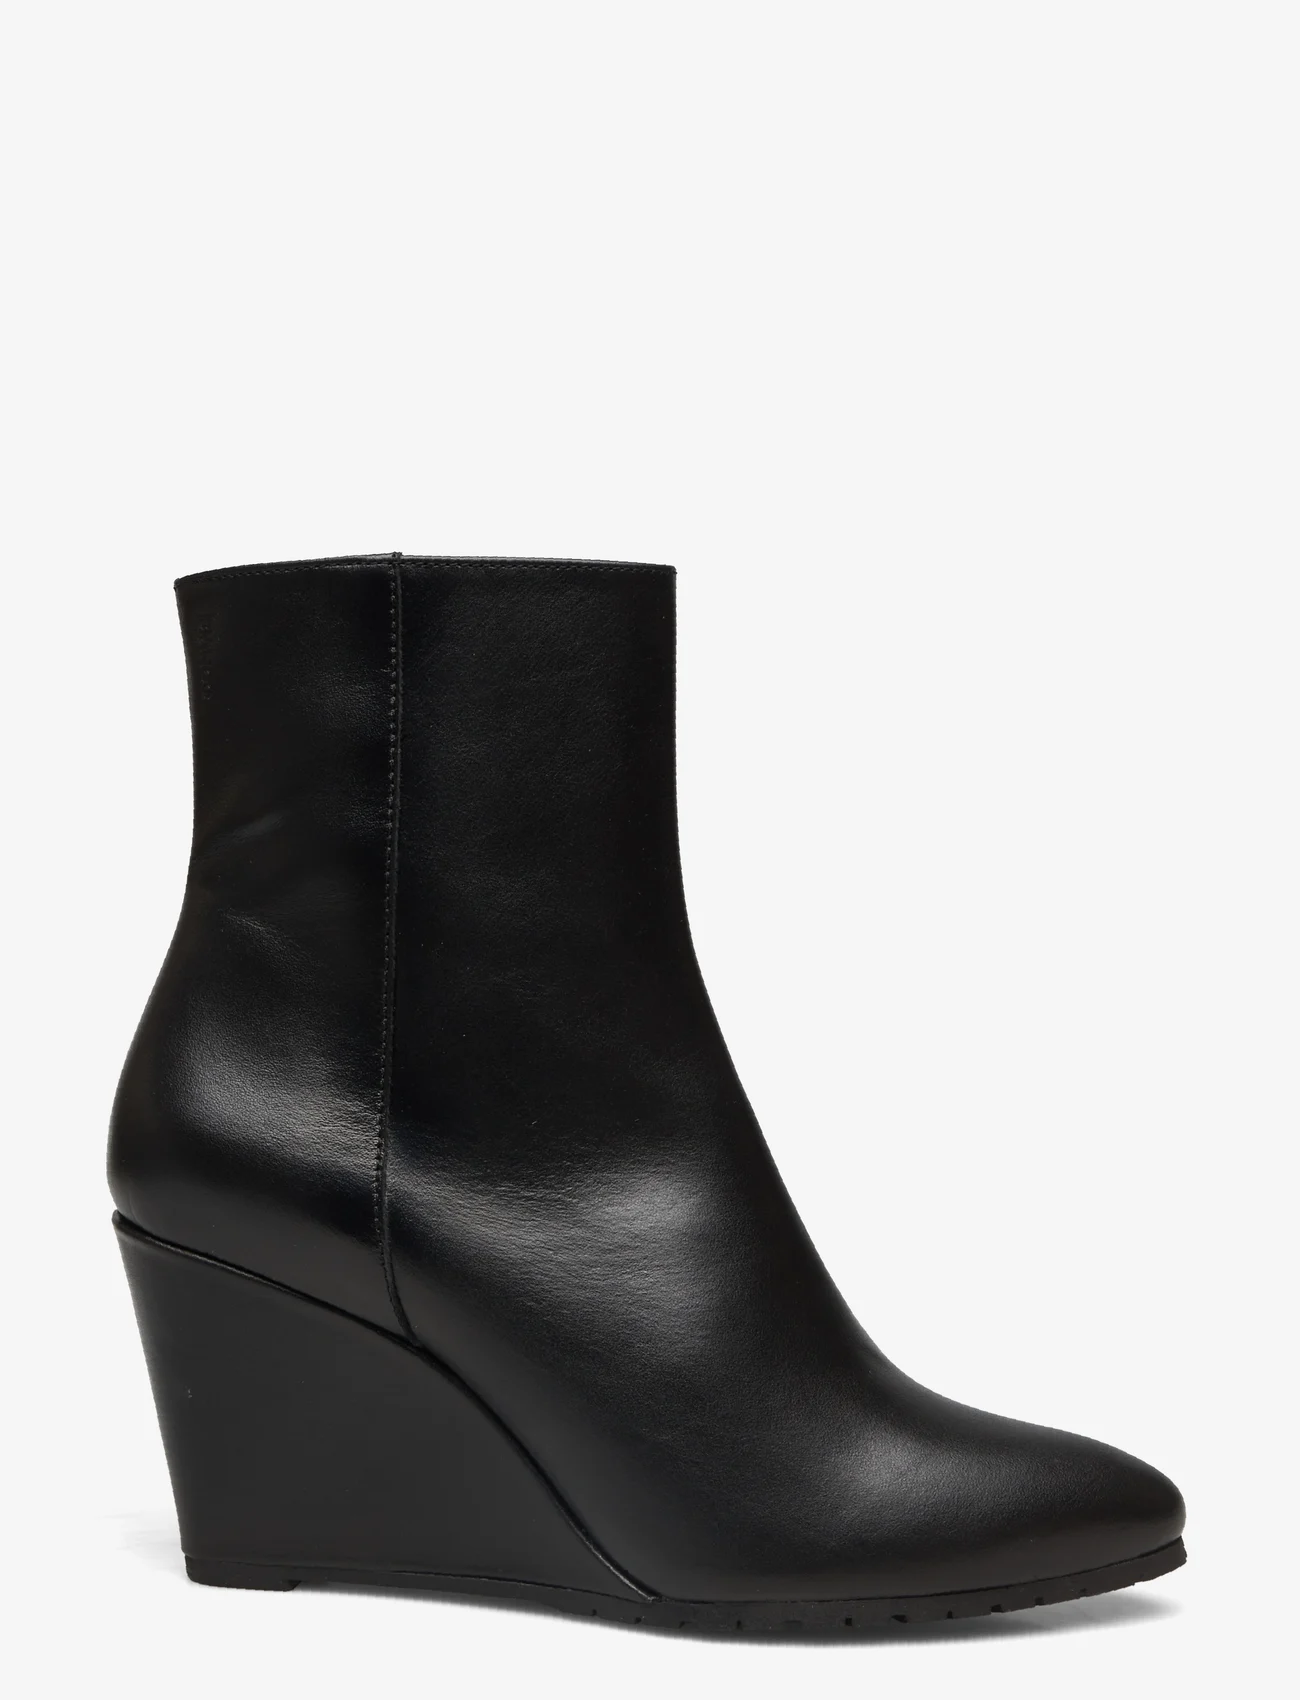 Bianco - BIATINA Wedge Ankle Boot Crust - high heel - black - 1